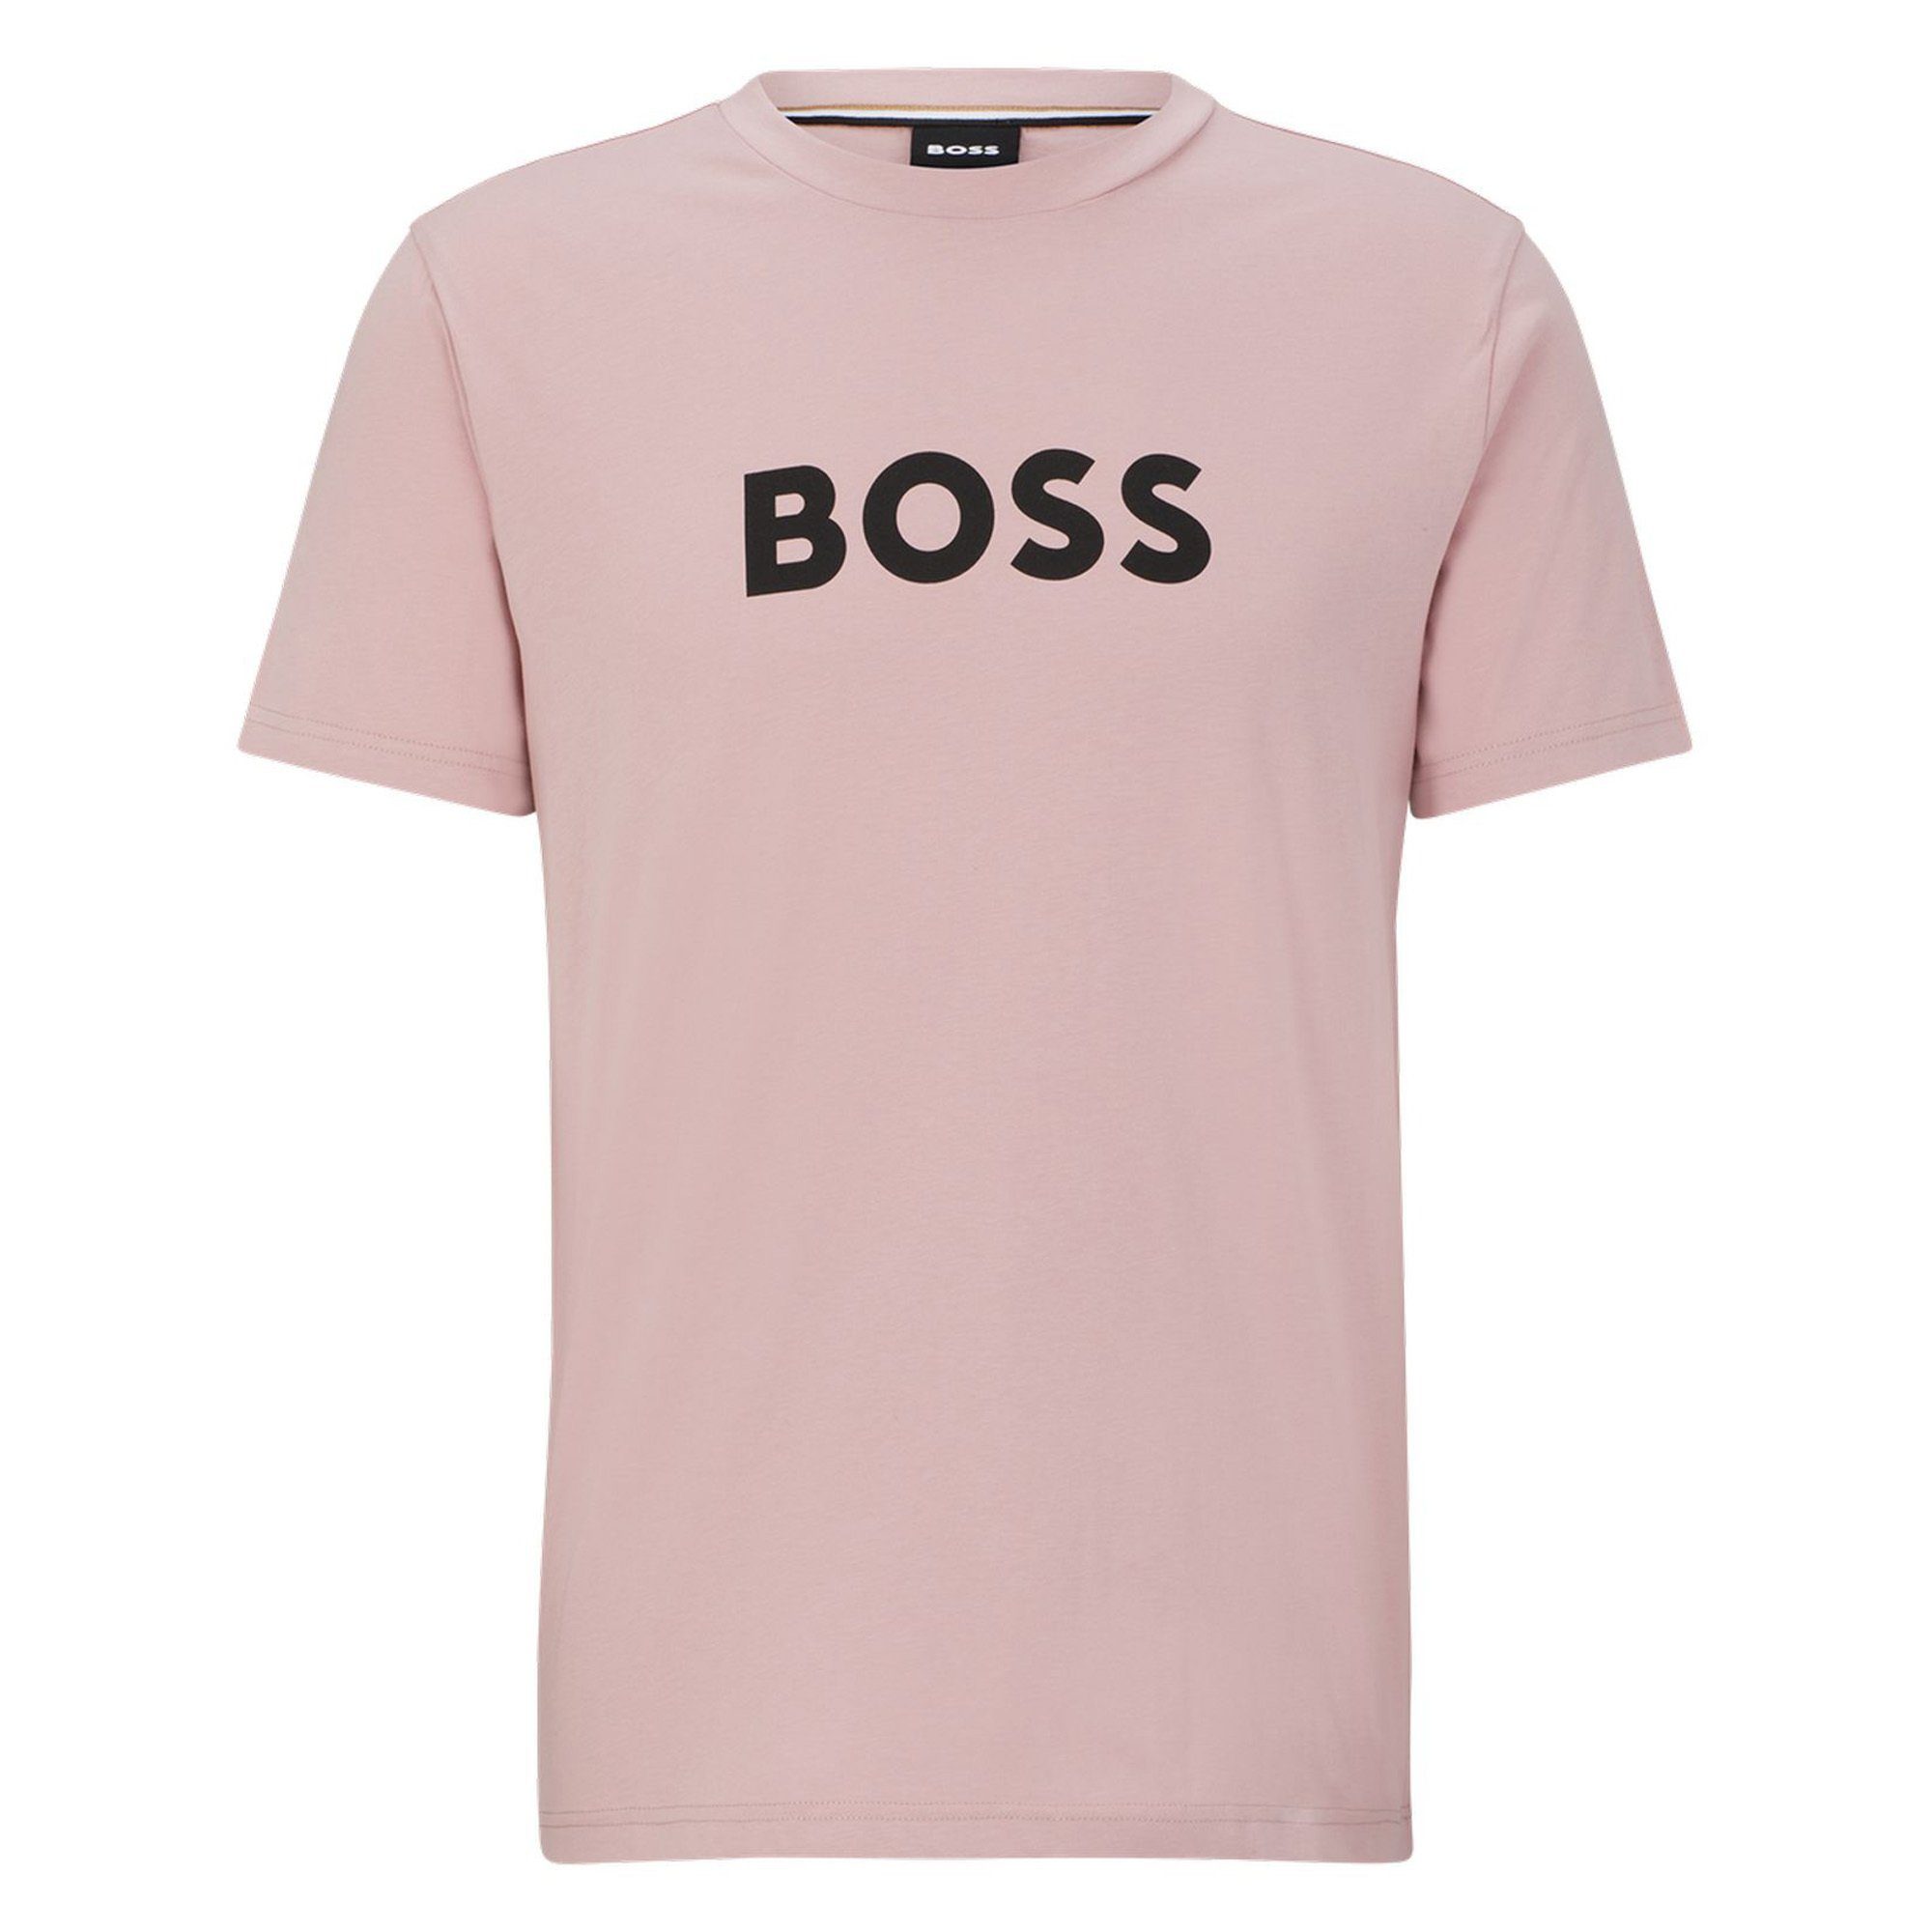 Rundhals, BOSS T-Shirt T-Shirt RN, - T-Shirt Kurzarm Herren Rosa